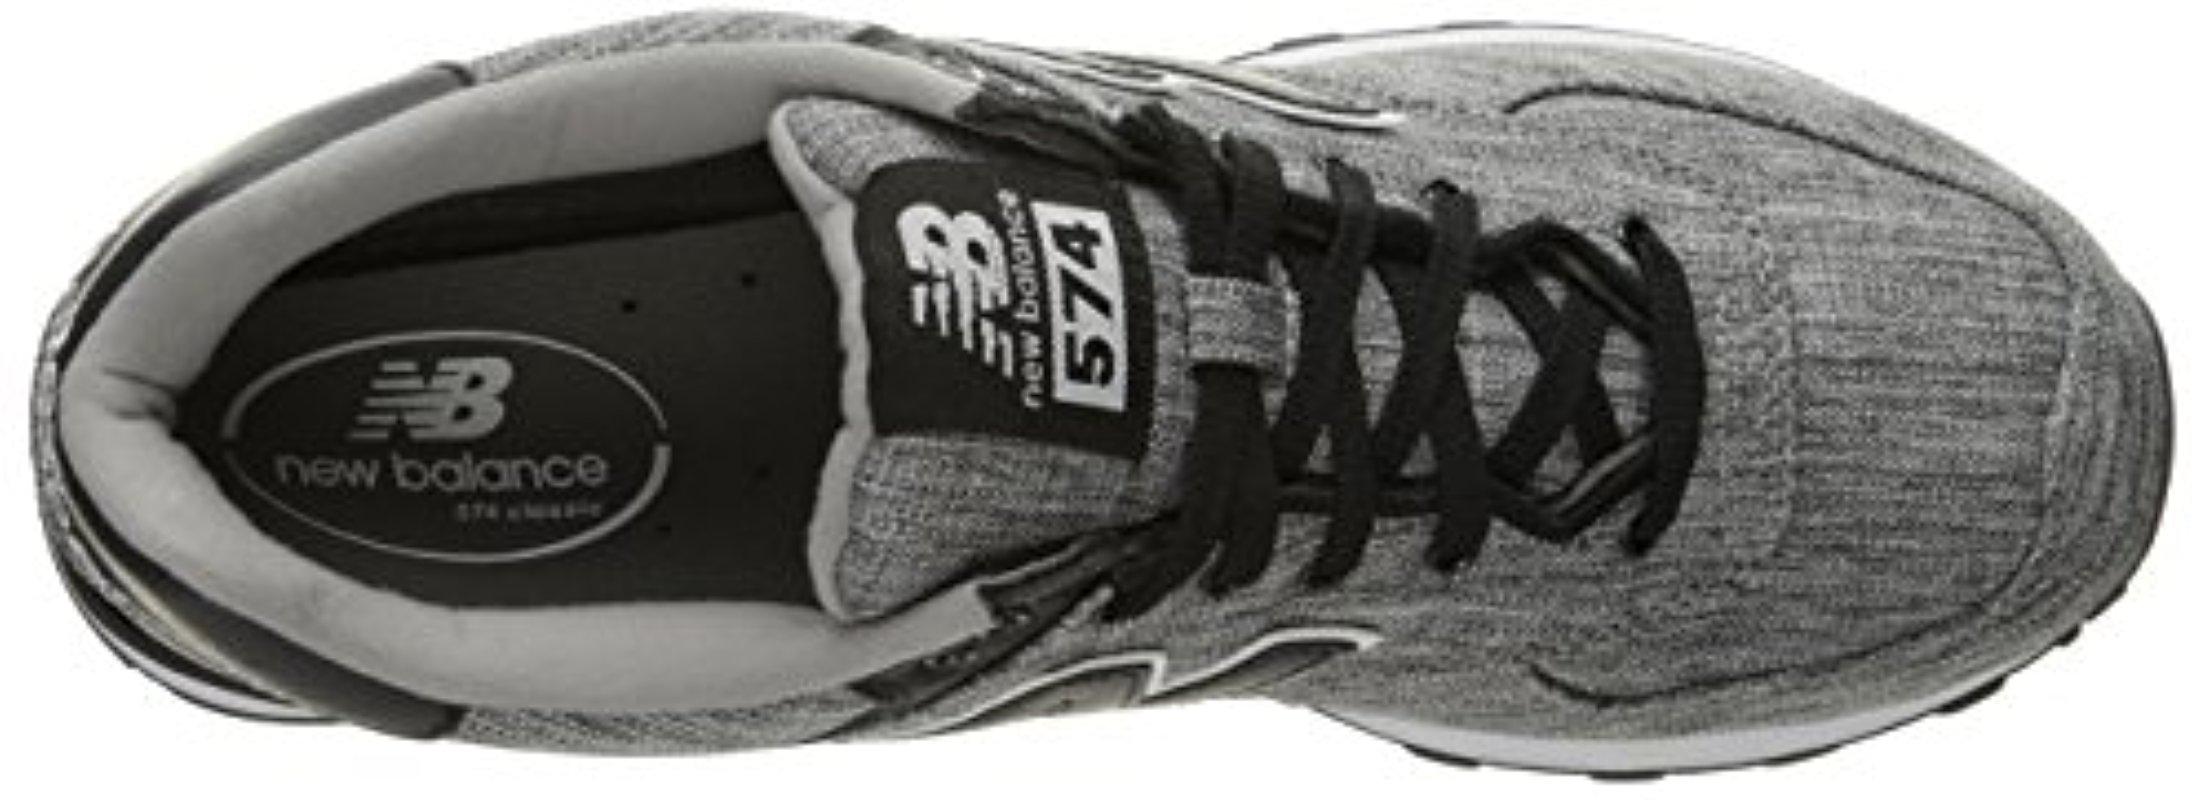 new balance men's 574v1 textile sneaker